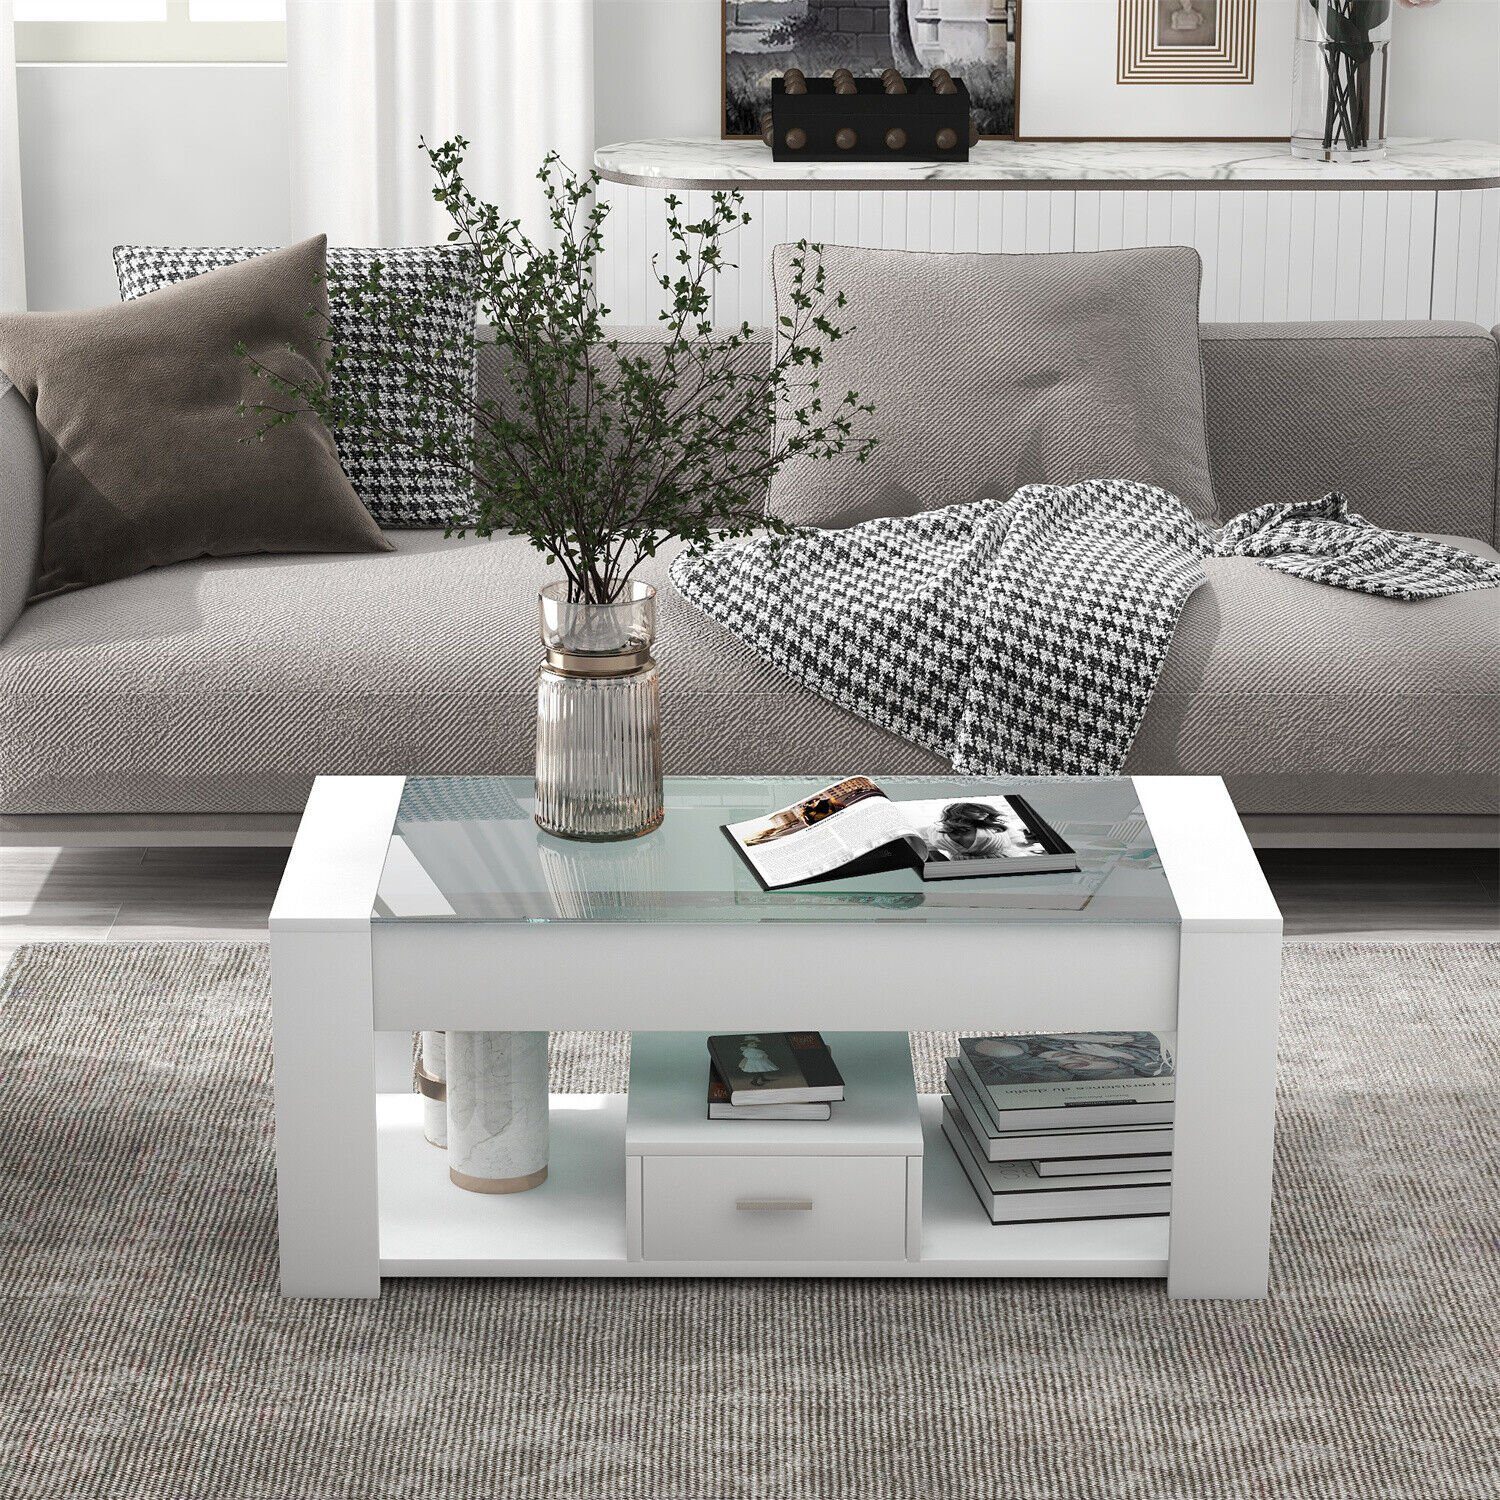 DOTMALL Tischsitz Couchtisch Weiß Wohnzimmer mit Glasplatte Stauraum